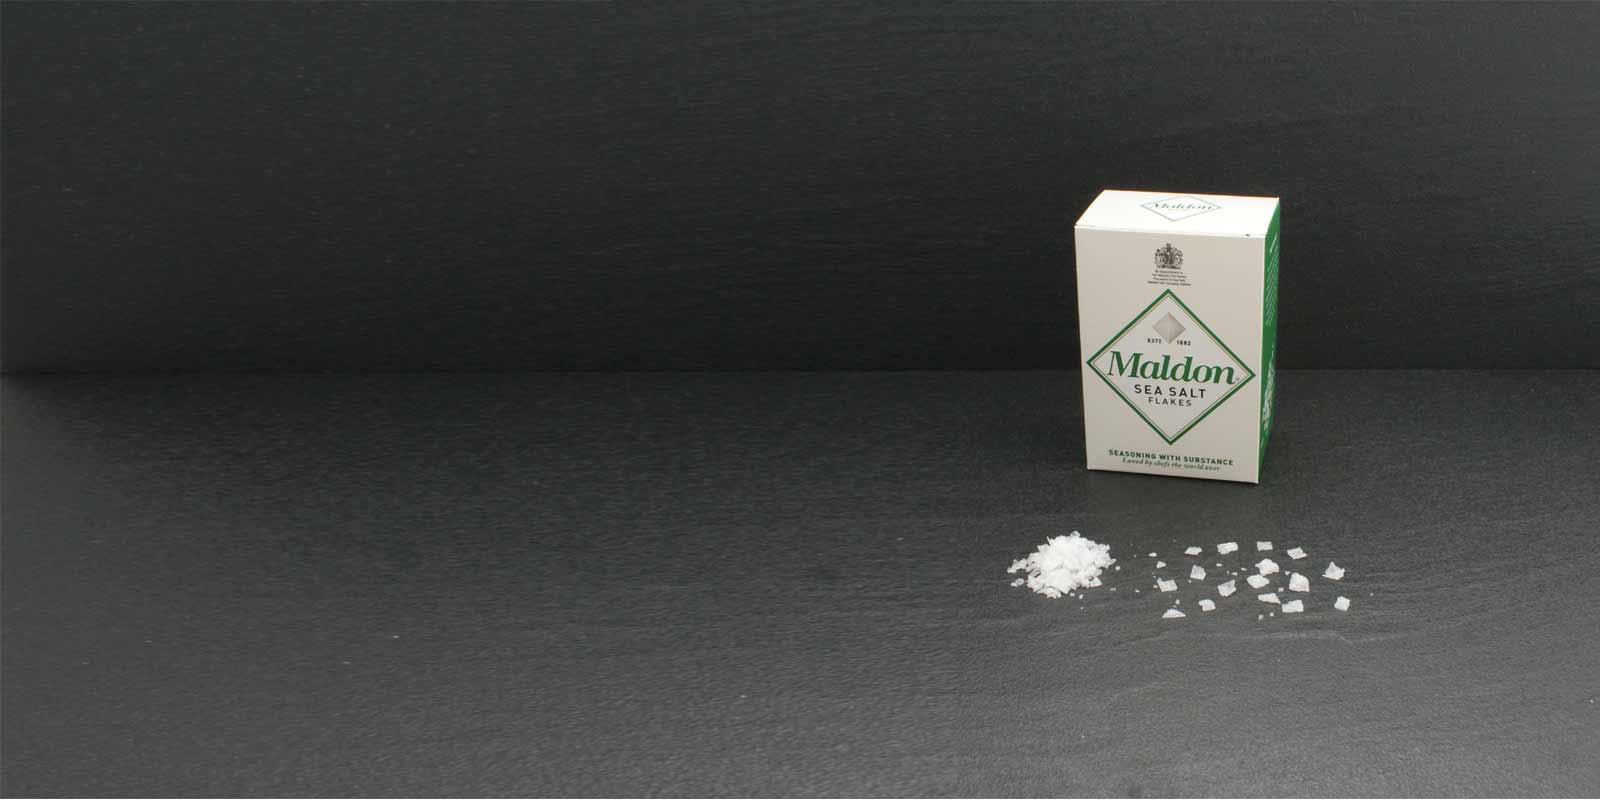 Krystaly vlocek morske soli Maldon Charakteristicke krystaly soli ve tvaru pyramidy jsou extremne tenke a daji se snadno rozetrit mezi prsty pro dochuceni. Cennou sul tezi spolecnost Maldon Sea Salt Company, jedina spolecnost na tezbu soli v Anglii. Maly rodinny podnik zpracovava a prodava sul jiz od roku 1882. Morska sul Maldon je k dispozici pouze v omezenem mnozstvi.